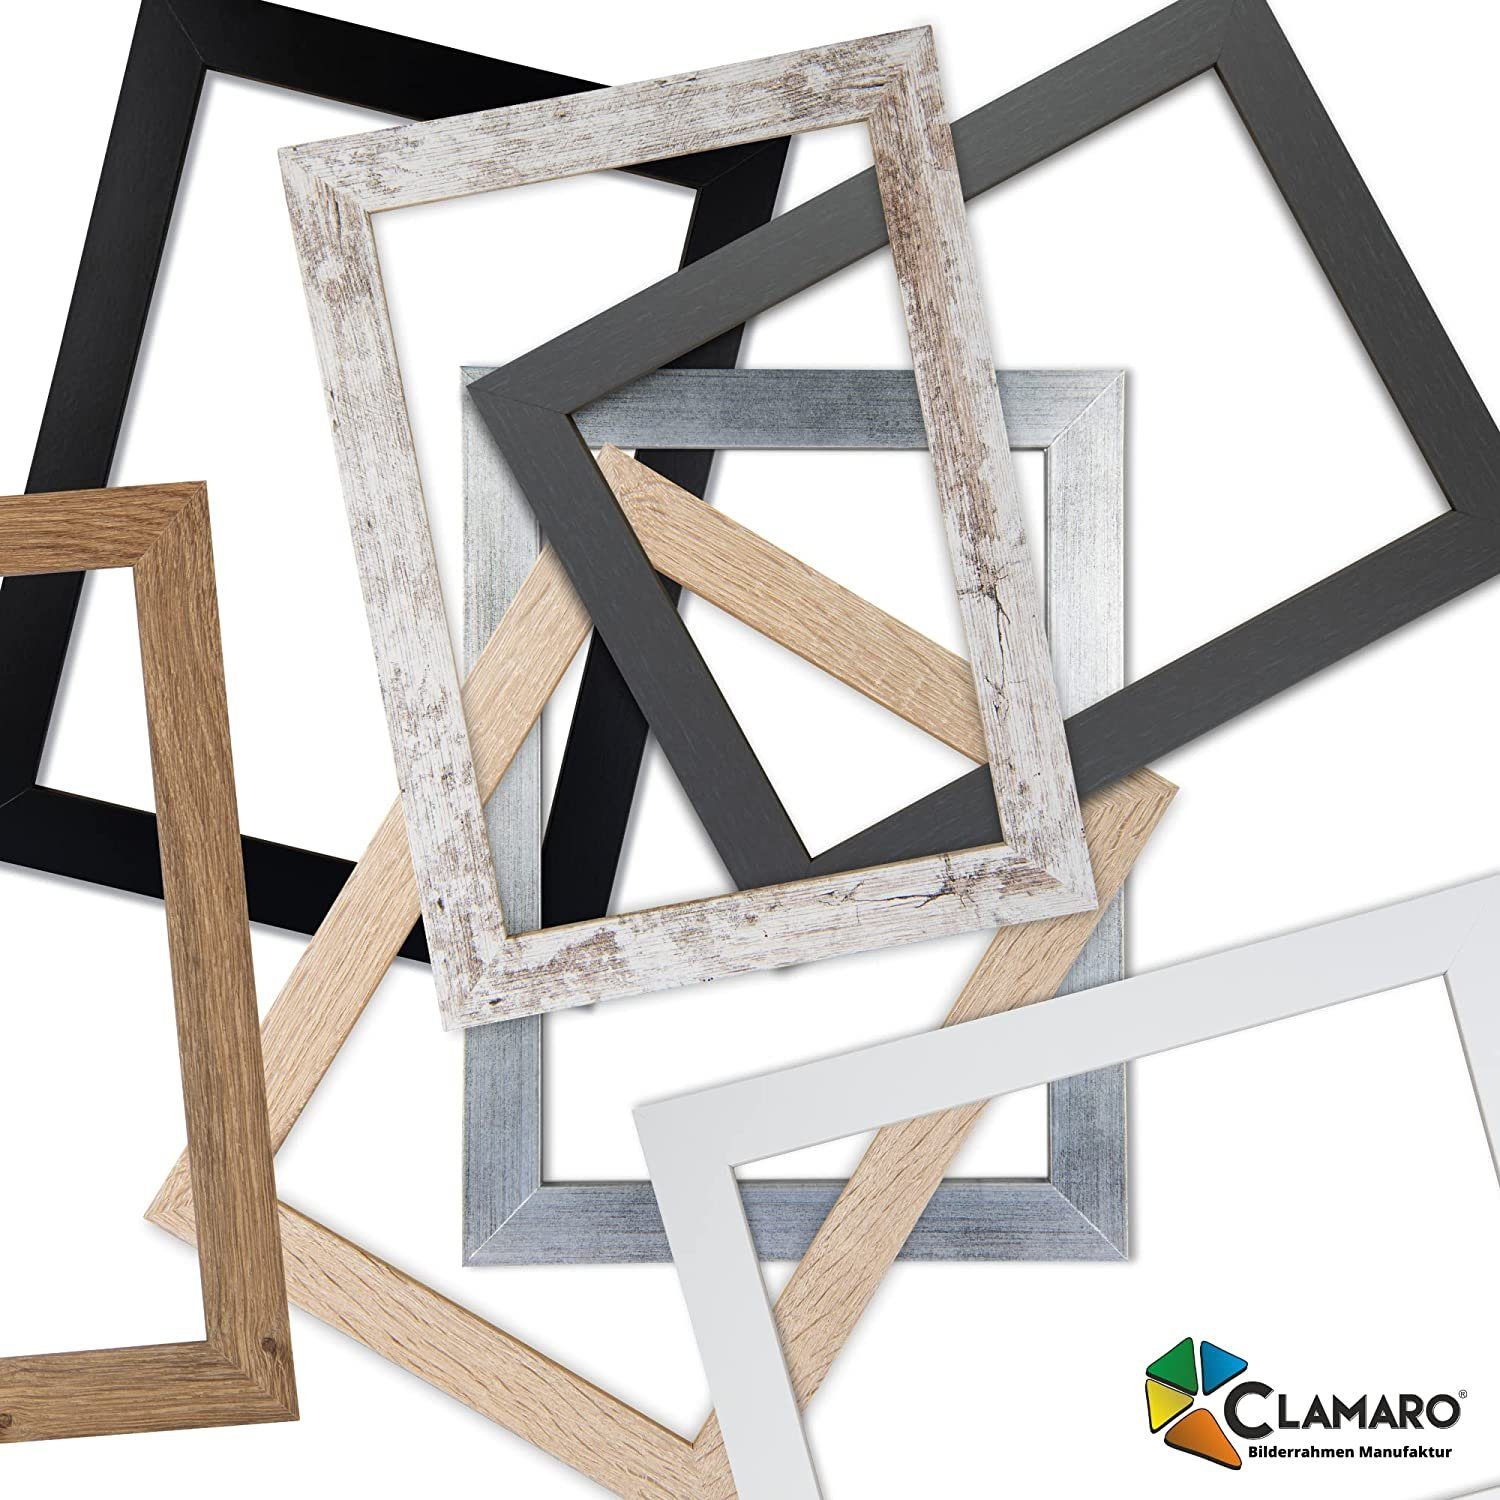 Clamaro Bilderrahmen Bilderrahmen nach GebÃ¼rstet Maß 43x Collage in Modern CLAMARO eckig FSC® Holz Silber